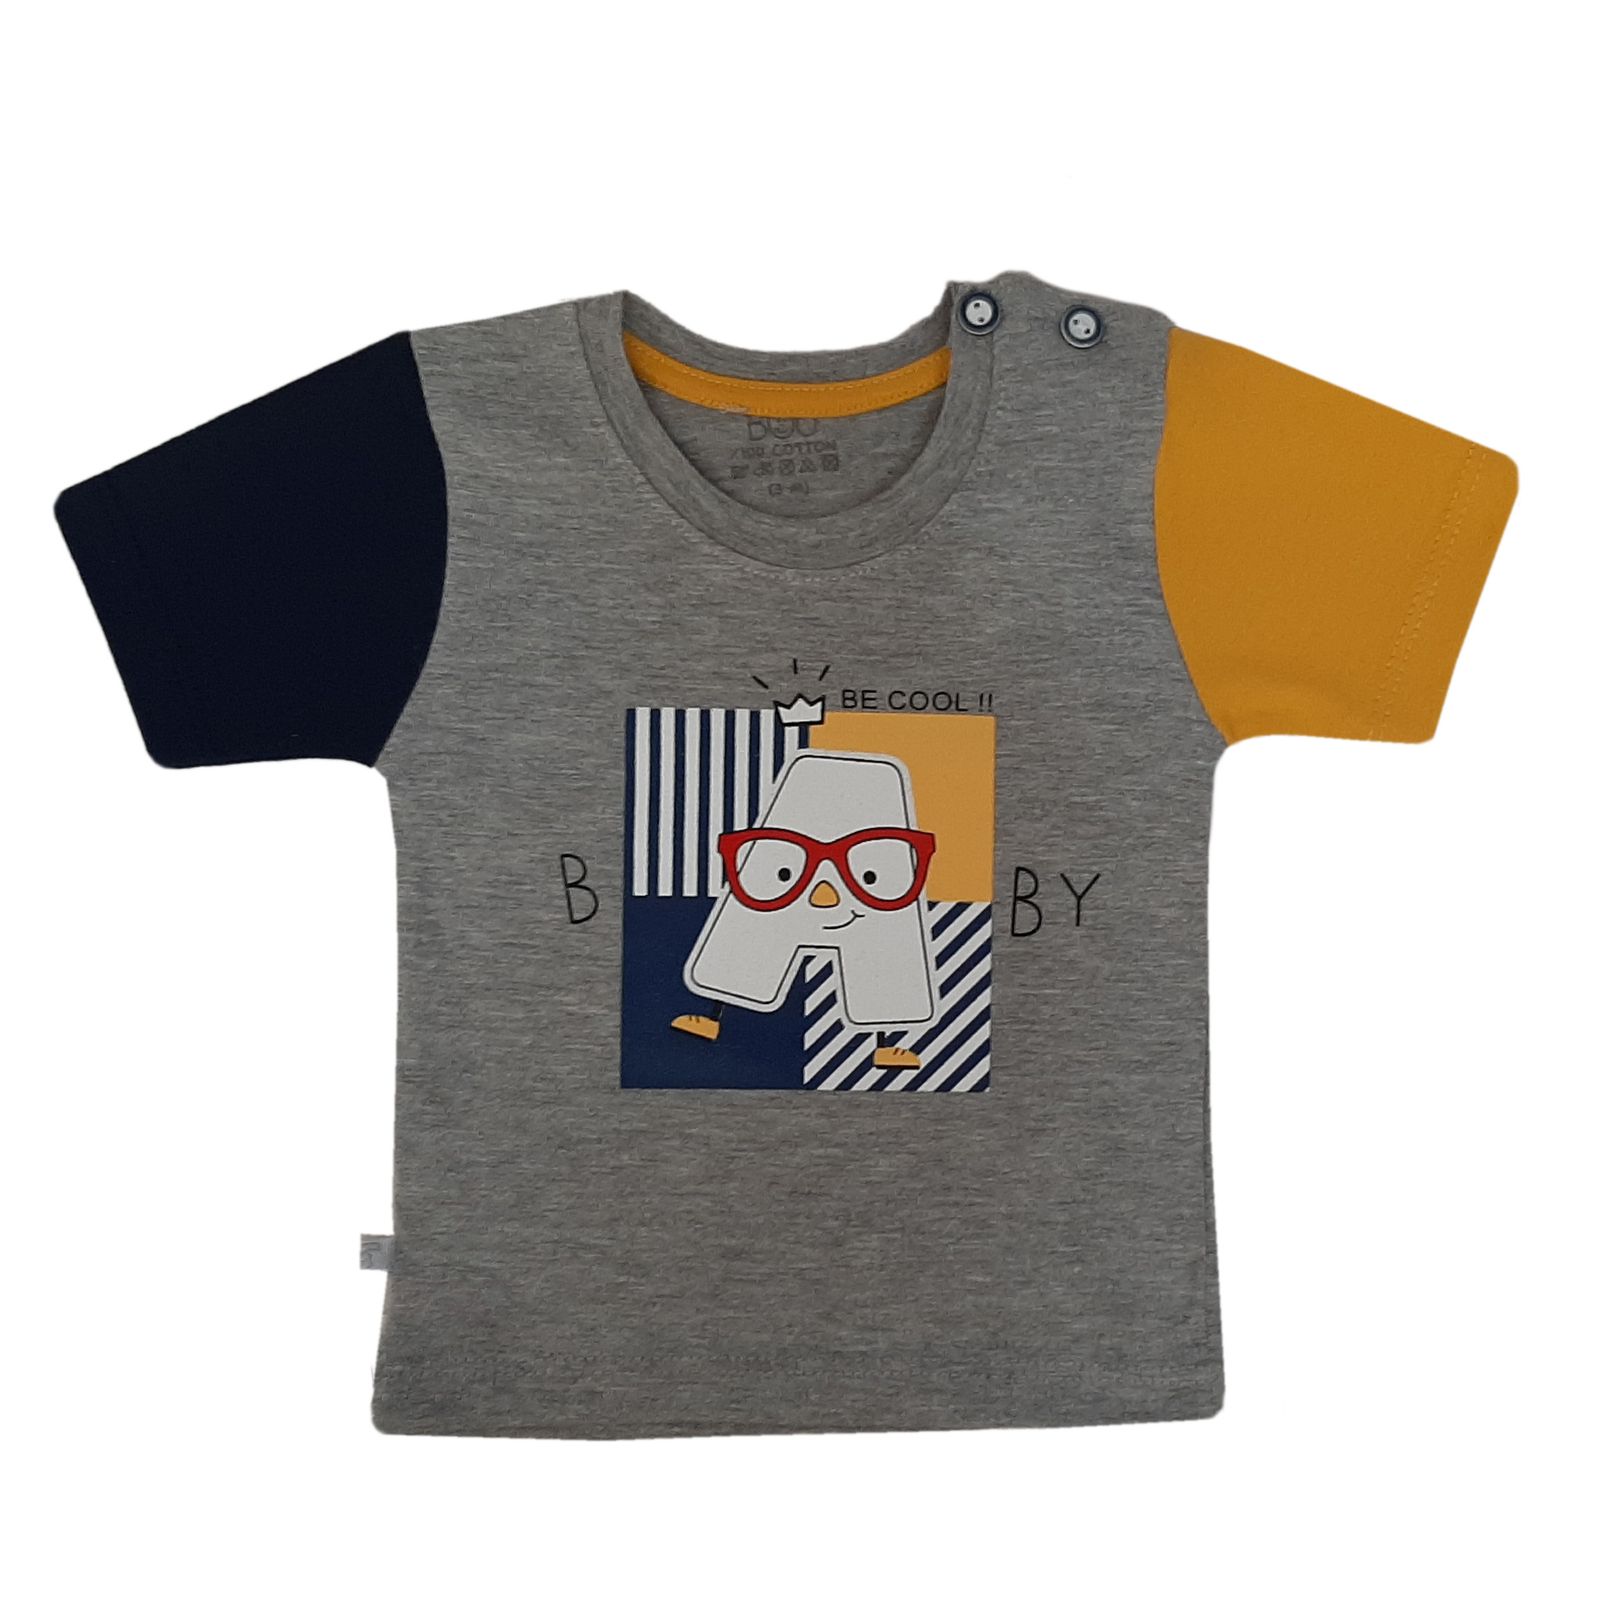 ست تی شرت و شلوارک نوزادی بیبی بو طرح A مدل 3-9524 -  - 2